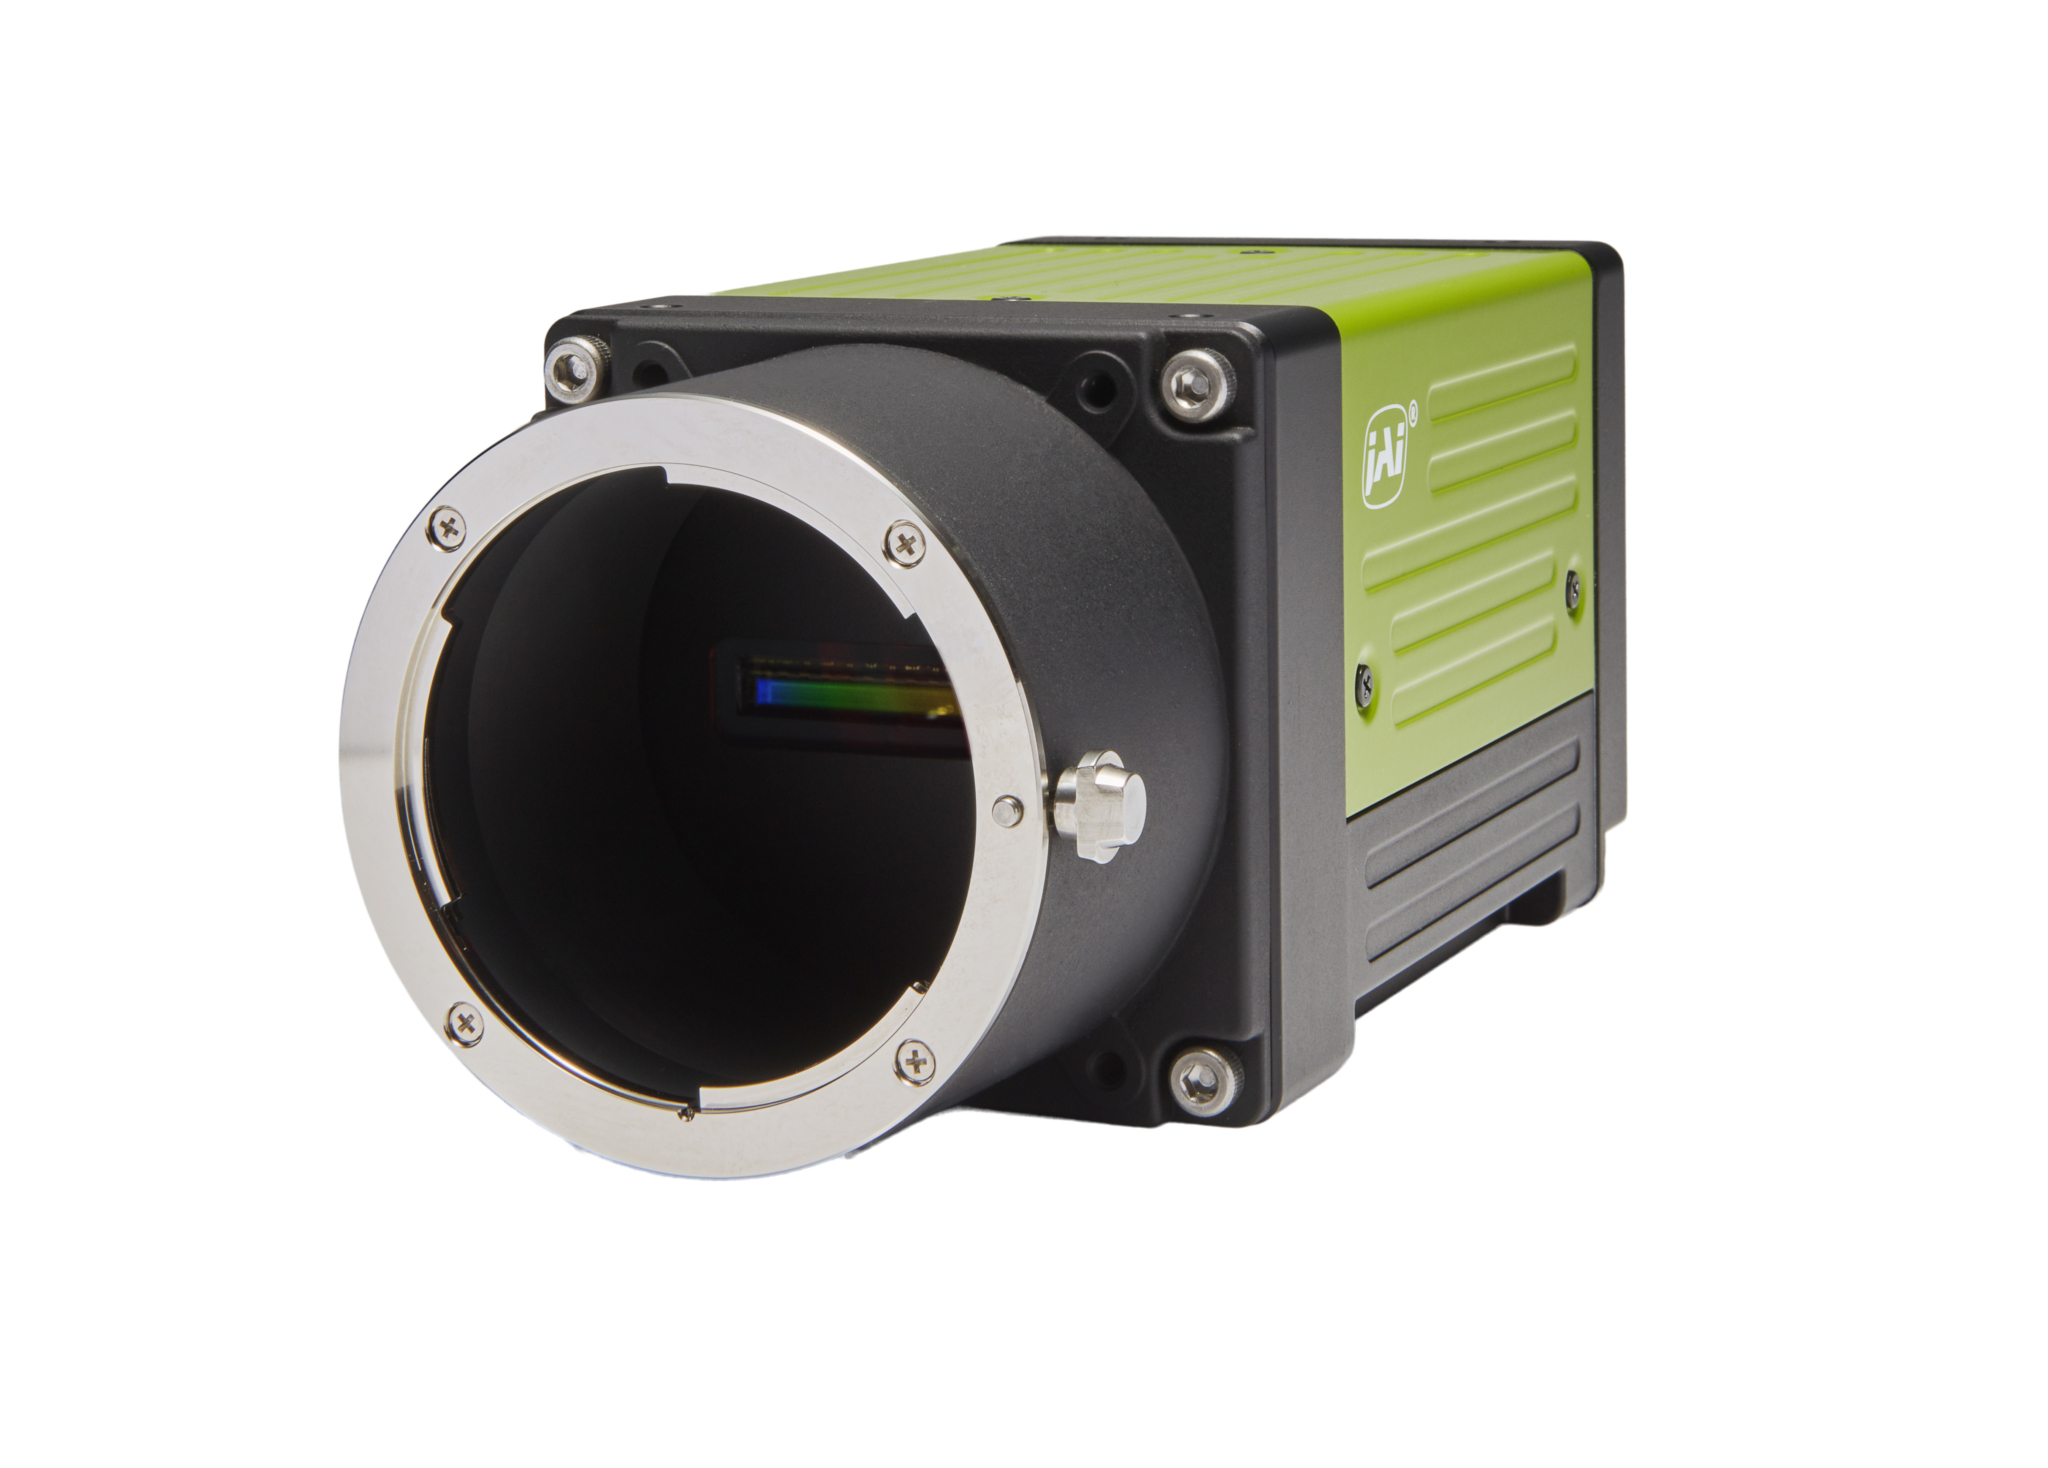 Sfp 光インタフェイスを備えた産業用カラーラインスキャンカメラ 3 モデルを新たに発売 マシンビジョン大全 Fa ファクトリーオートメーション 用途で活用する事例を紹介するウェブメディア マシンビジョン大全 Fa ファクトリーオートメーション 用途で活用する